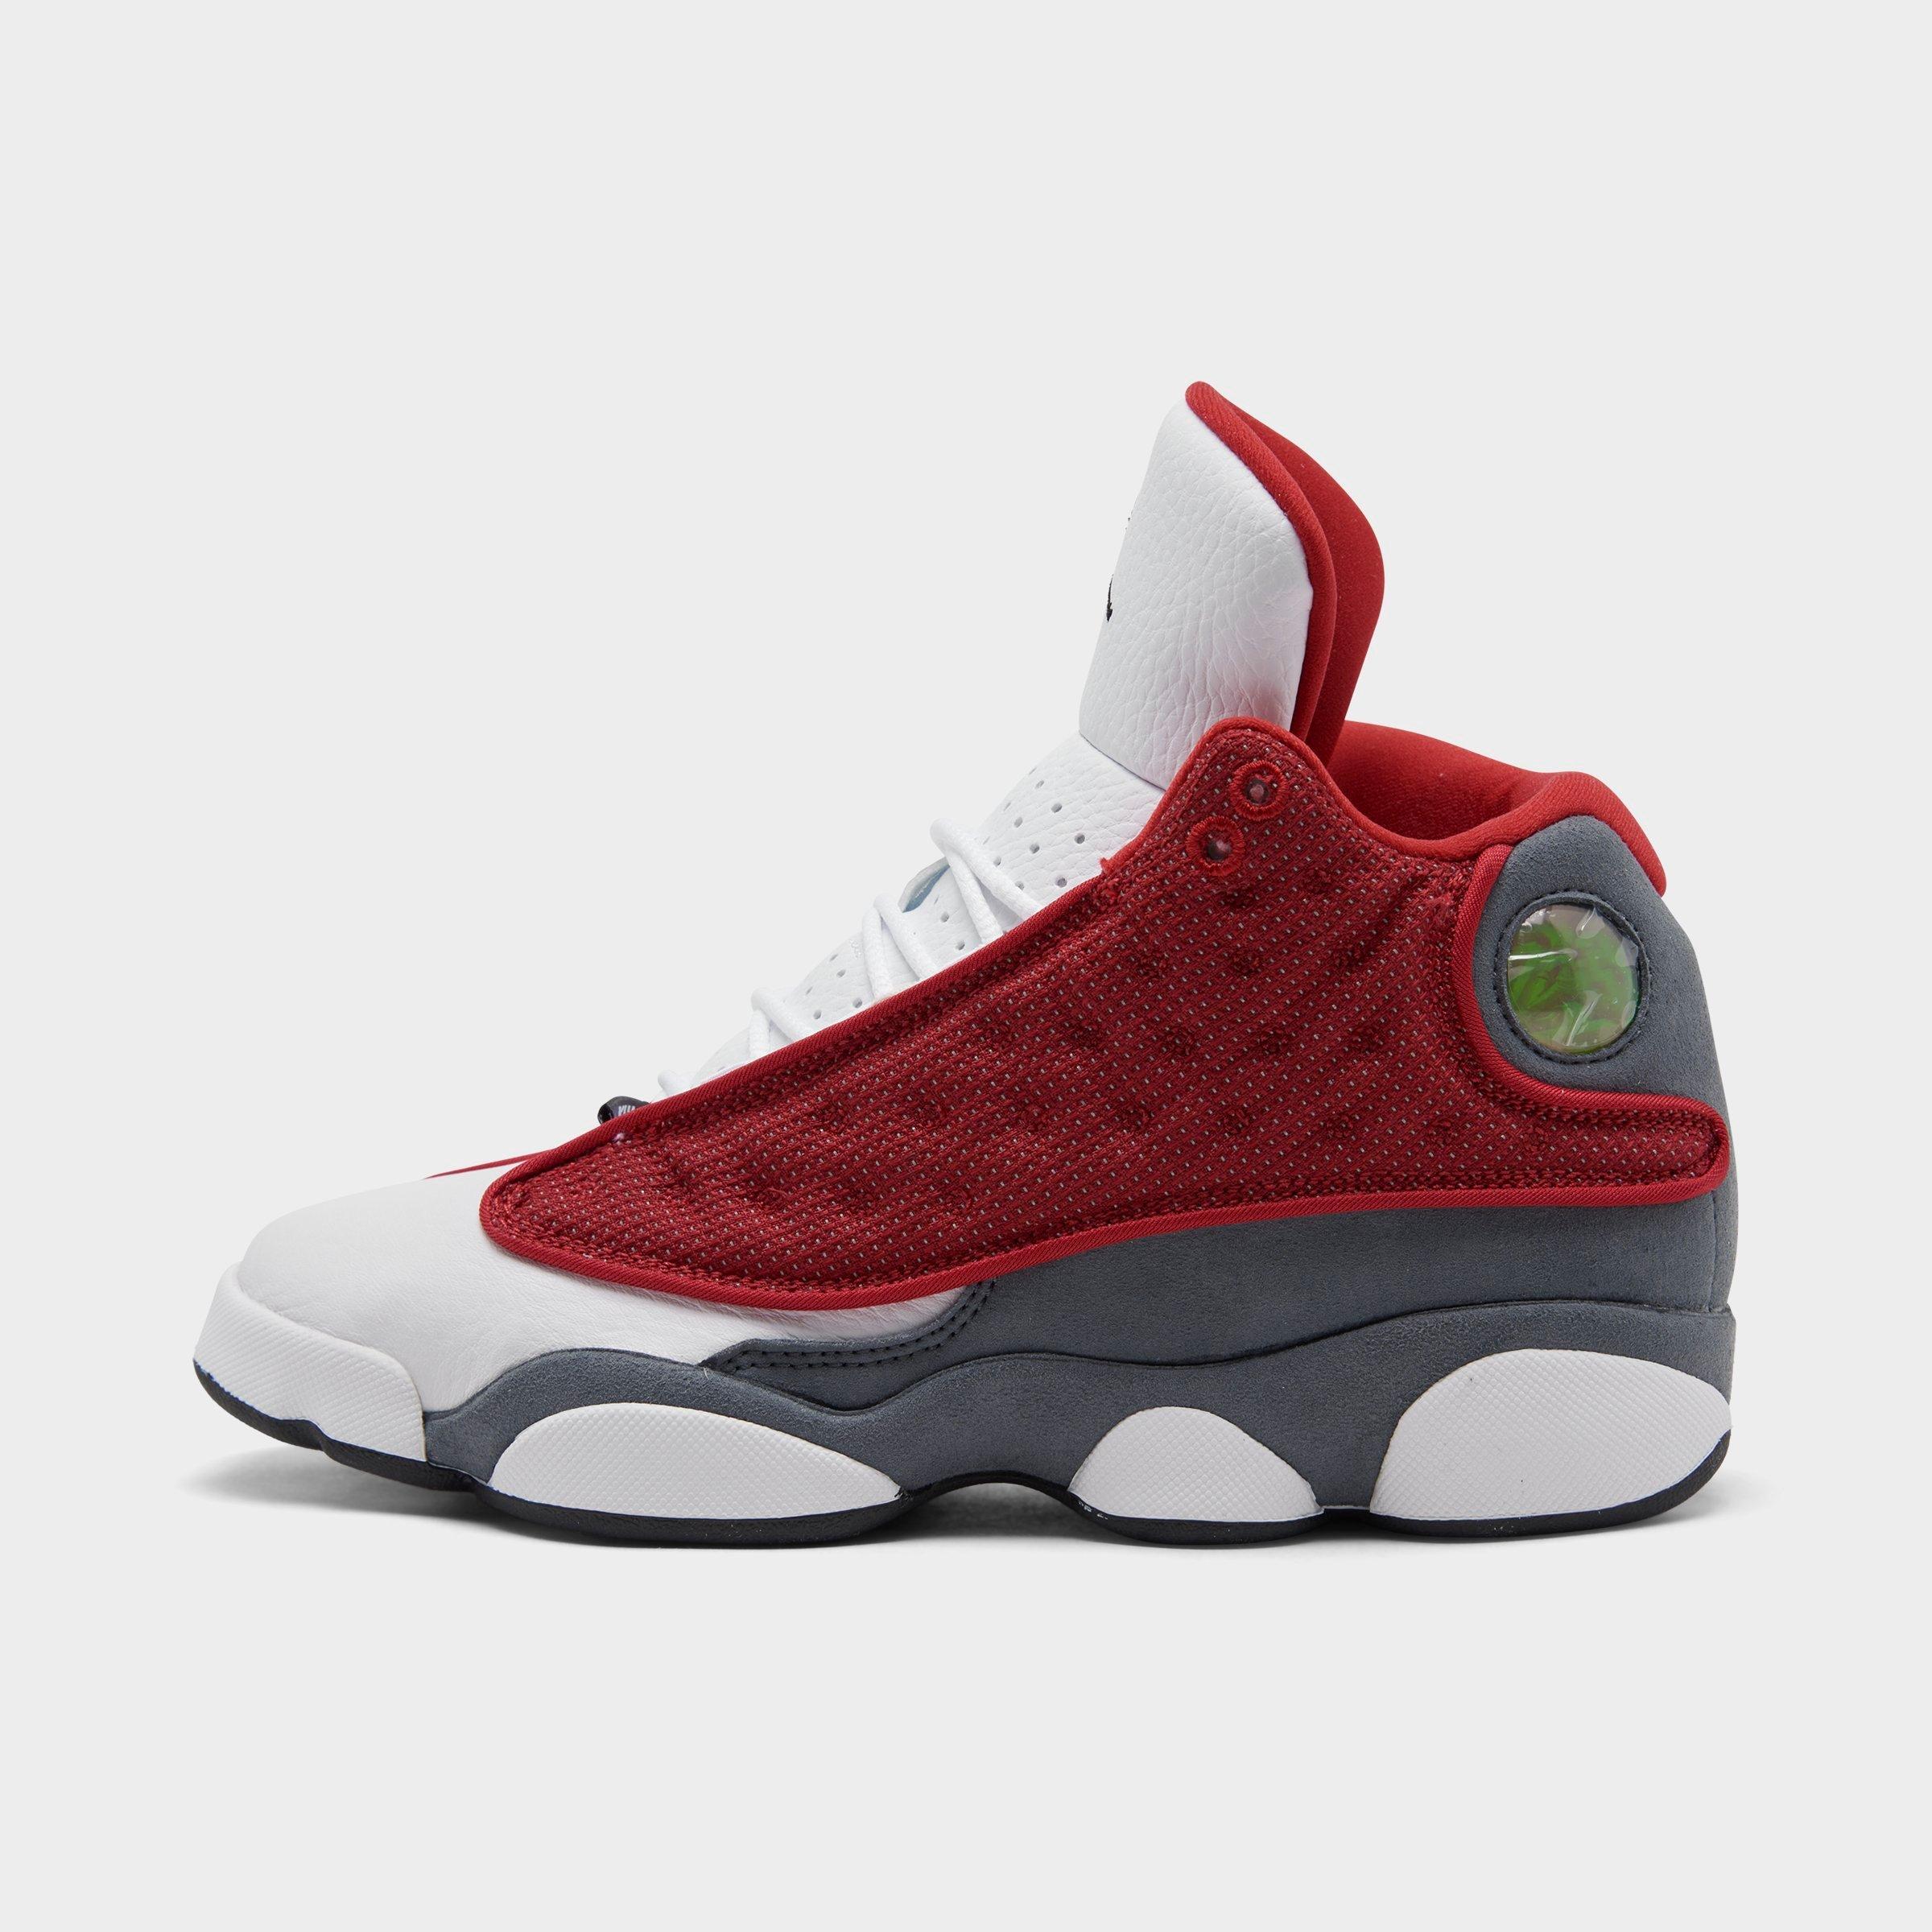 Jordan Retro 13 Shoes | Air Jordan 13 